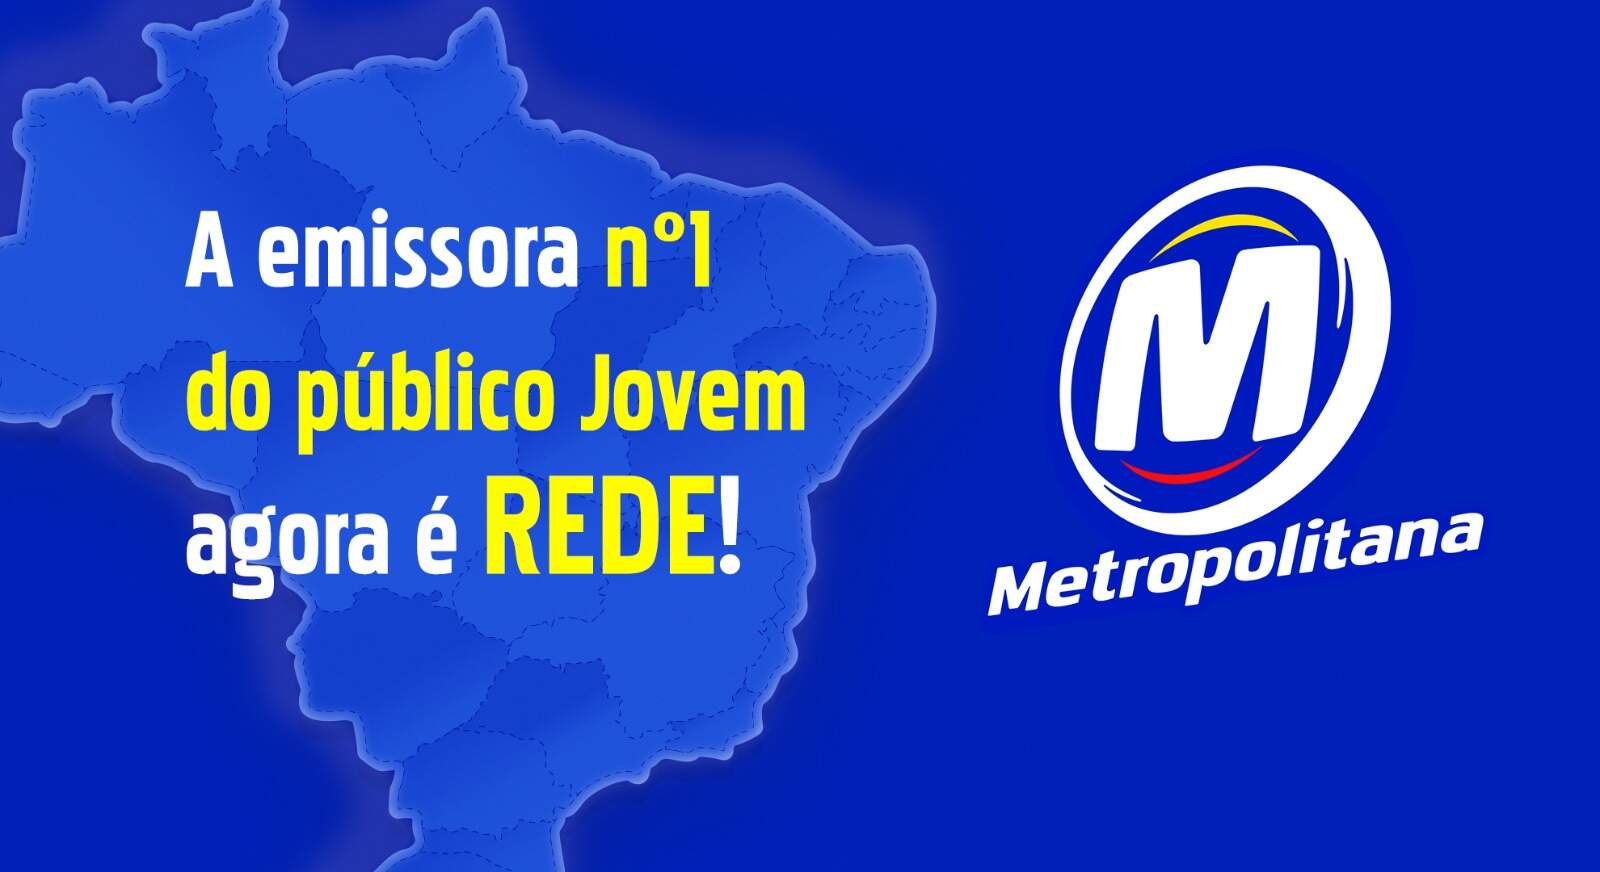 Rede Metropolitana estreia em Ribeirão Preto